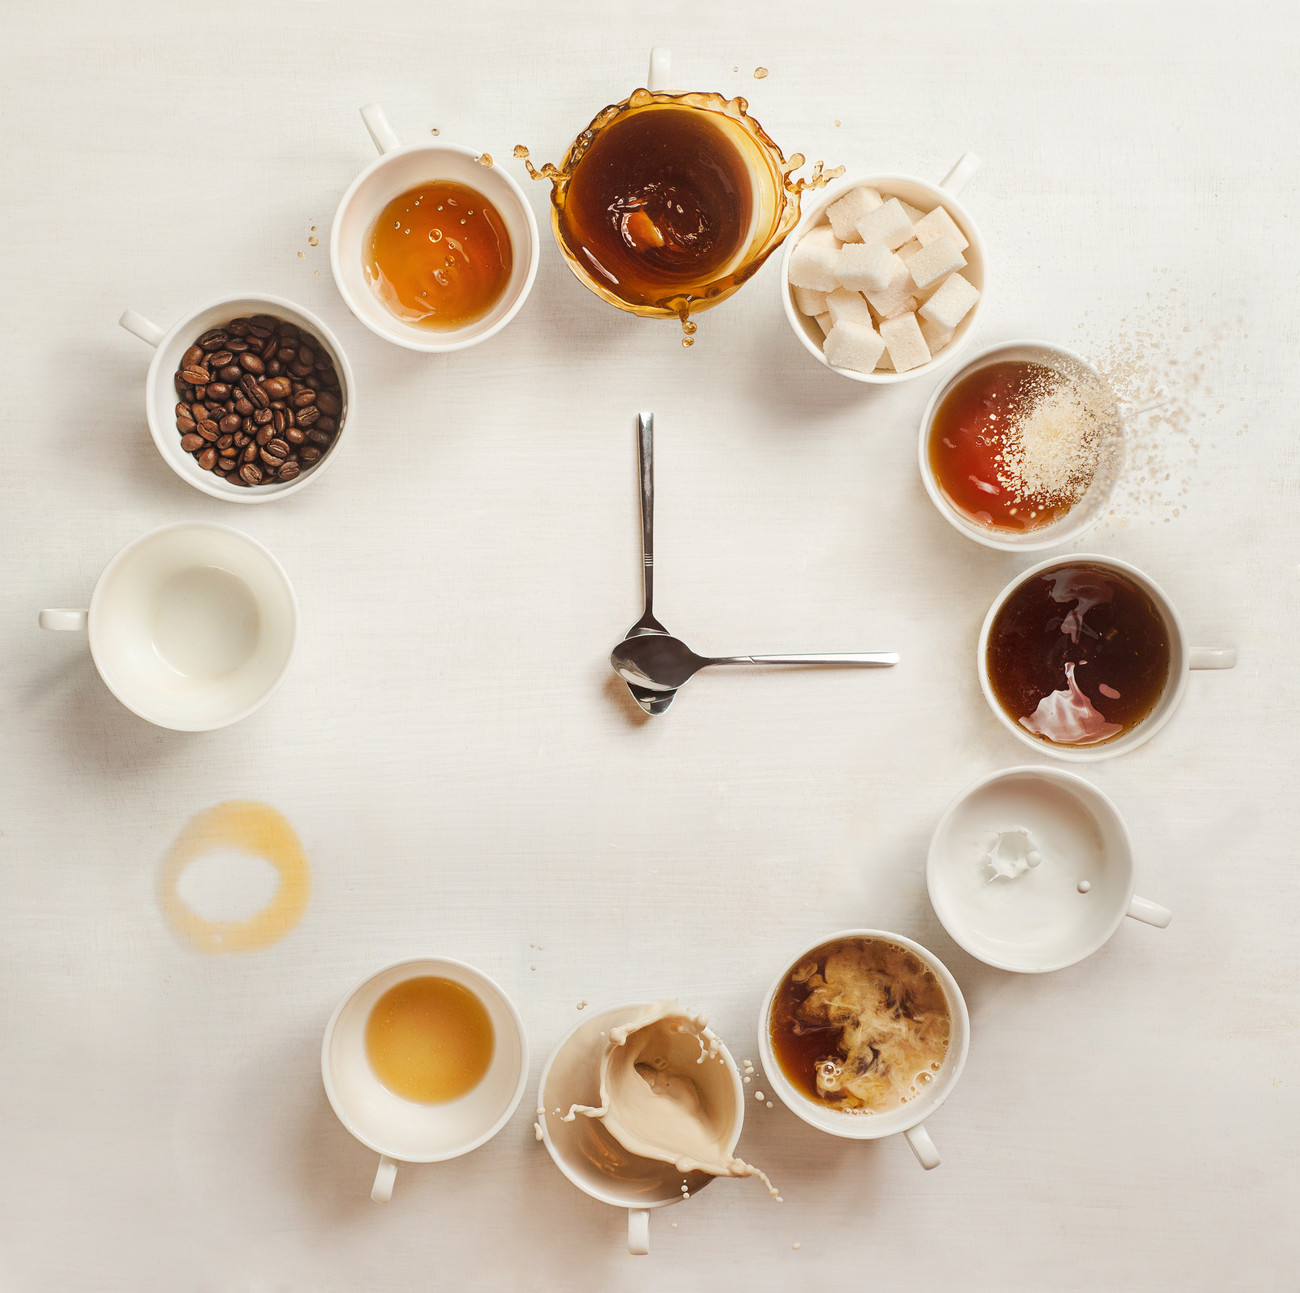 بهترین زمان نوشیدن قهوه چه موقع از روز است ؟